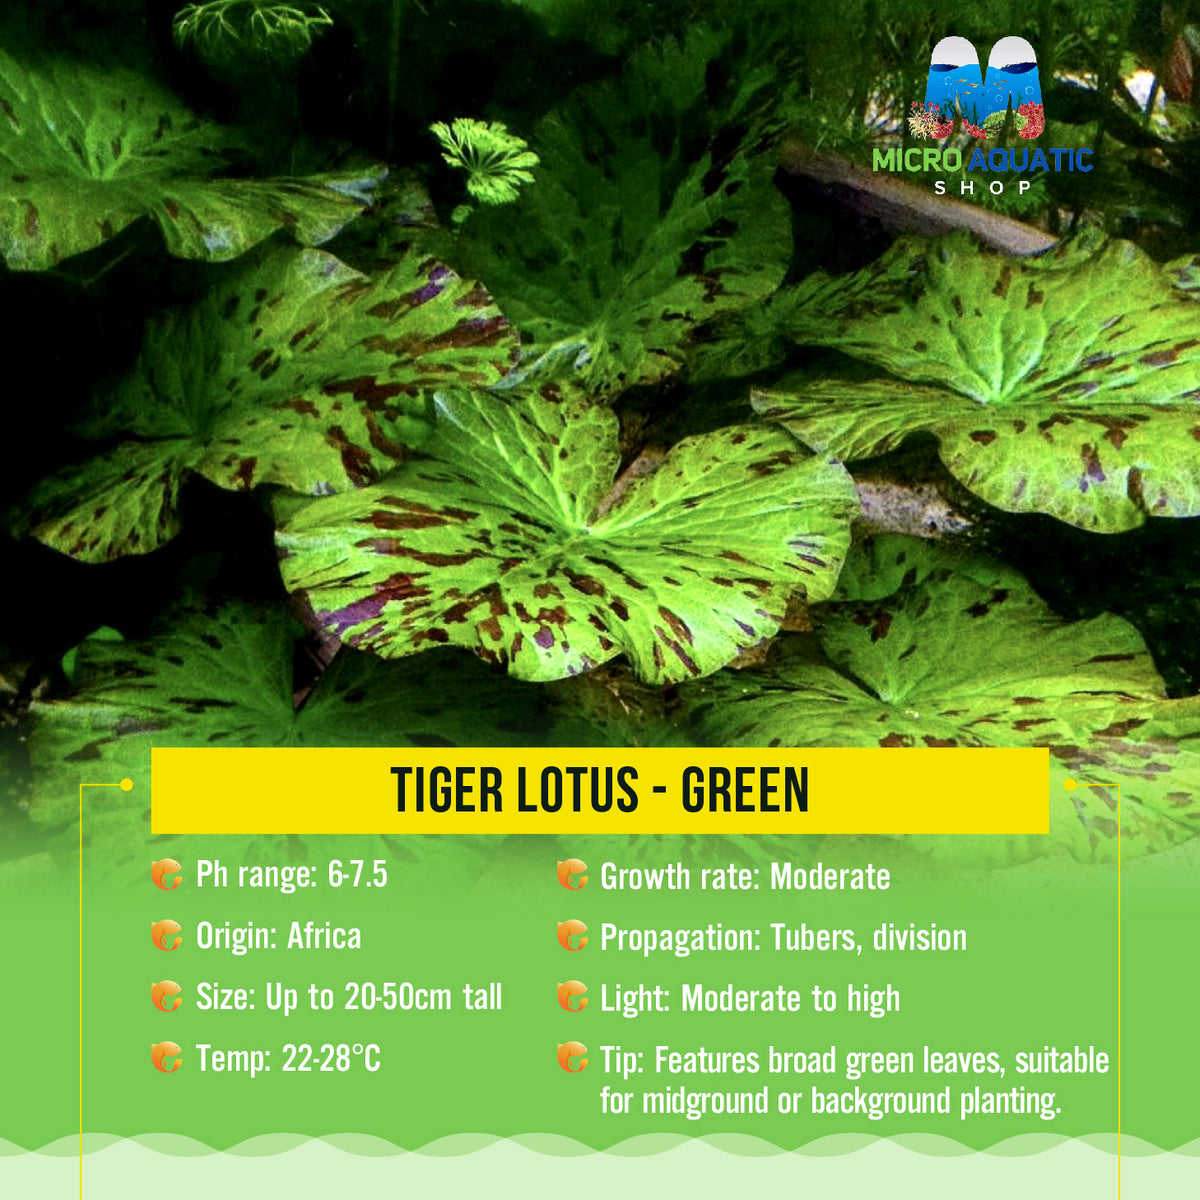 Tiger Lotus - Green